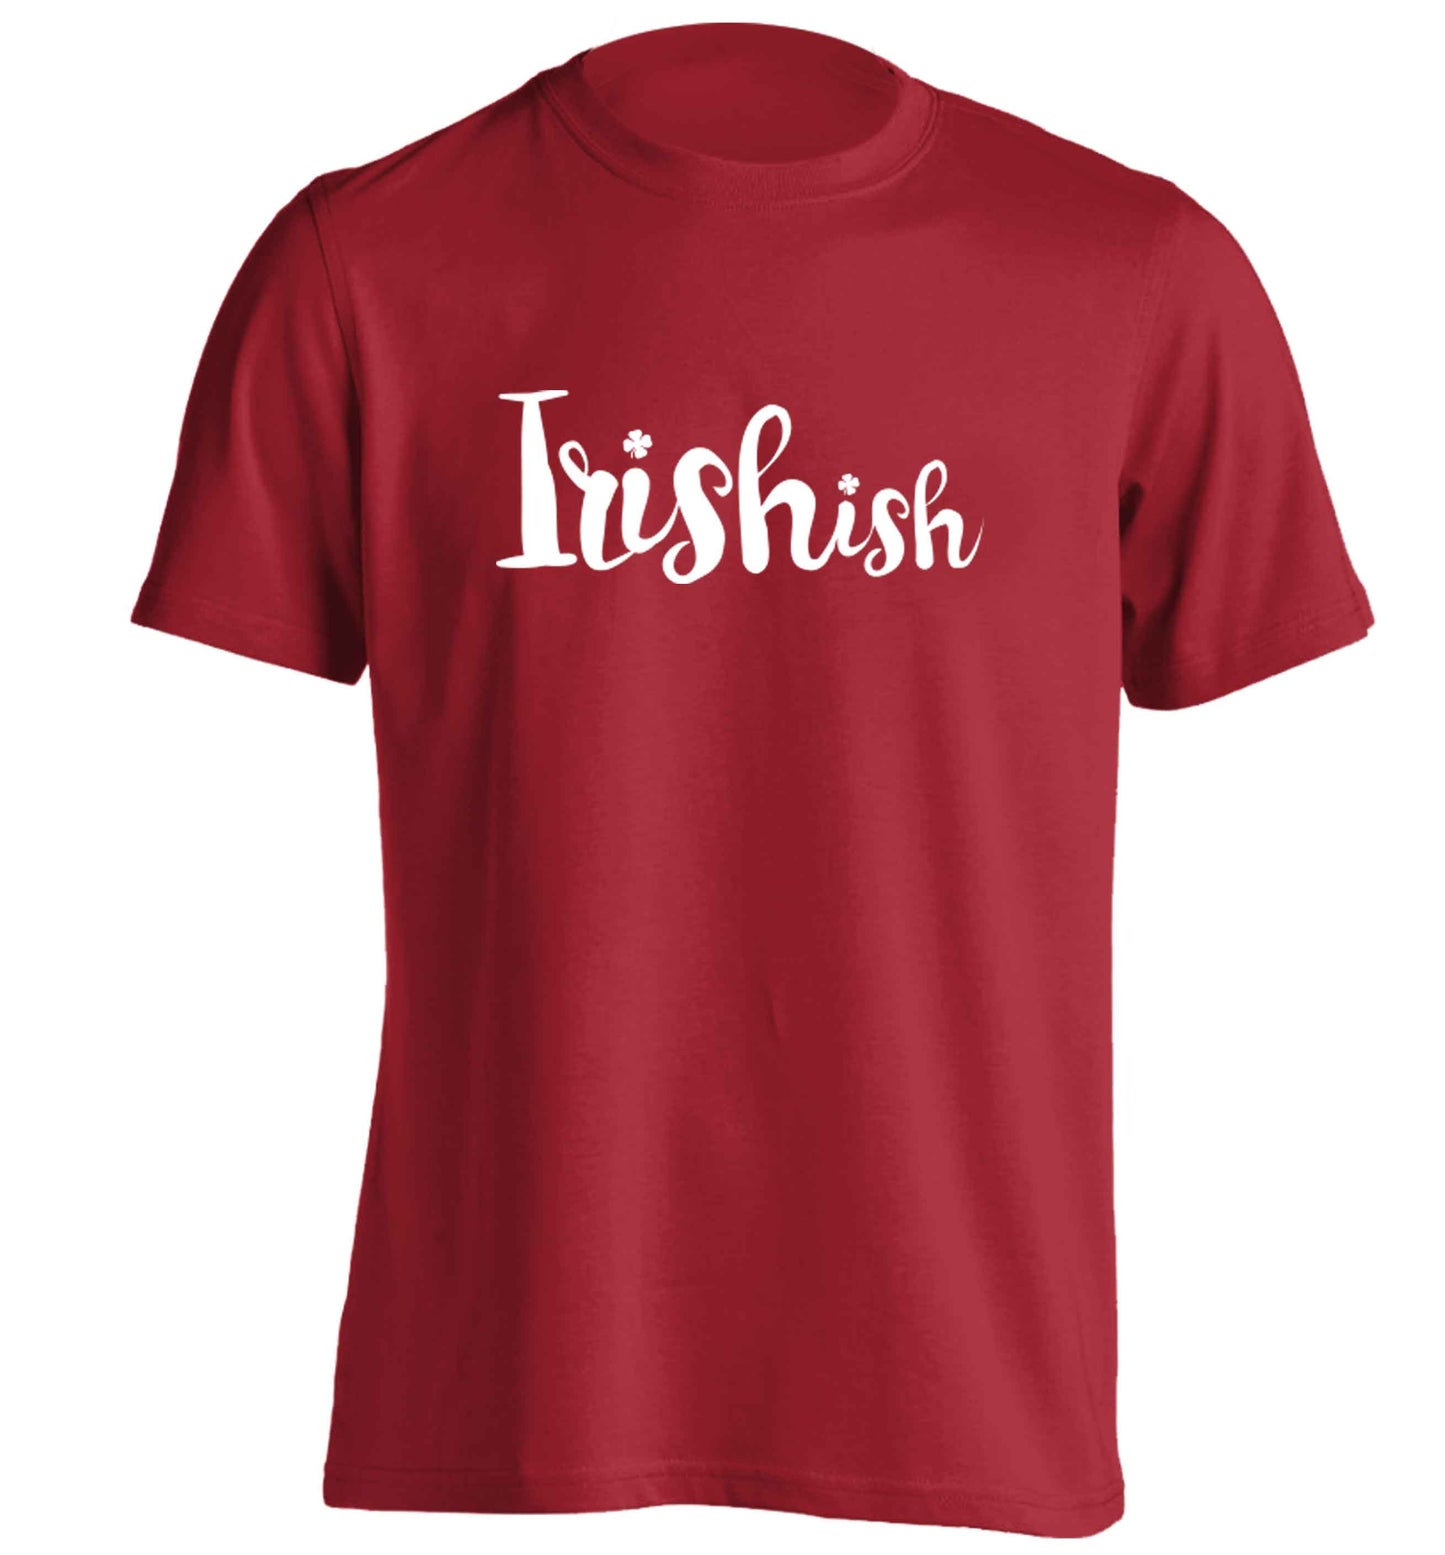 Irishish adults unisex red Tshirt 2XL